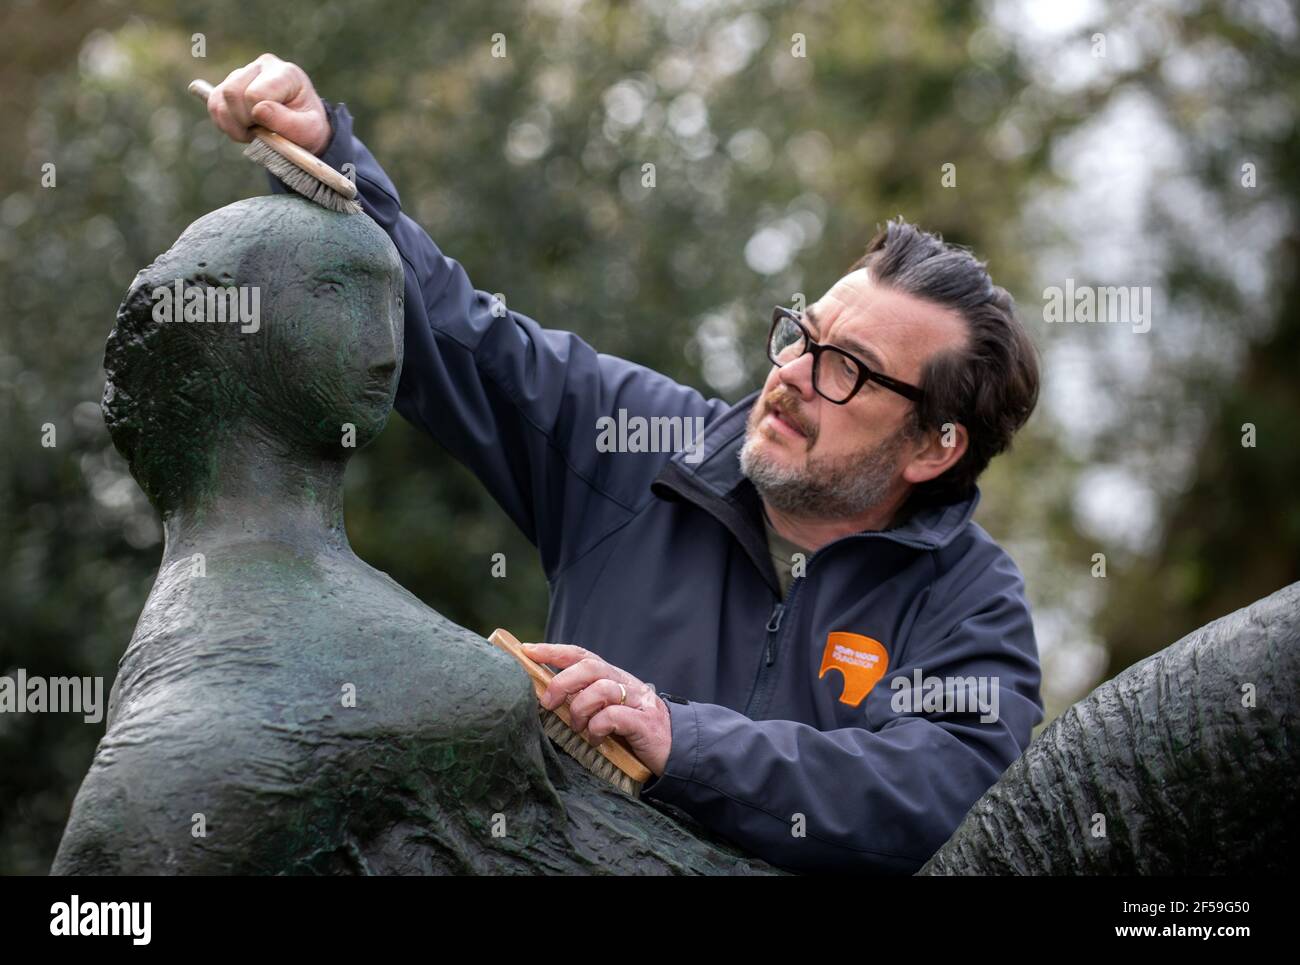 Il conservatore di sculture James Copper cere la scultura in bronzo 'Raped Reclining Figure' durante i preparativi per gli Henry Moore Studios e giardini a Much Hadham, Hertfordshire, per riaprire il 31 marzo dopo che le restrizioni di blocco sono attenuate. Data immagine: Giovedì 25 marzo 2021. Foto Stock